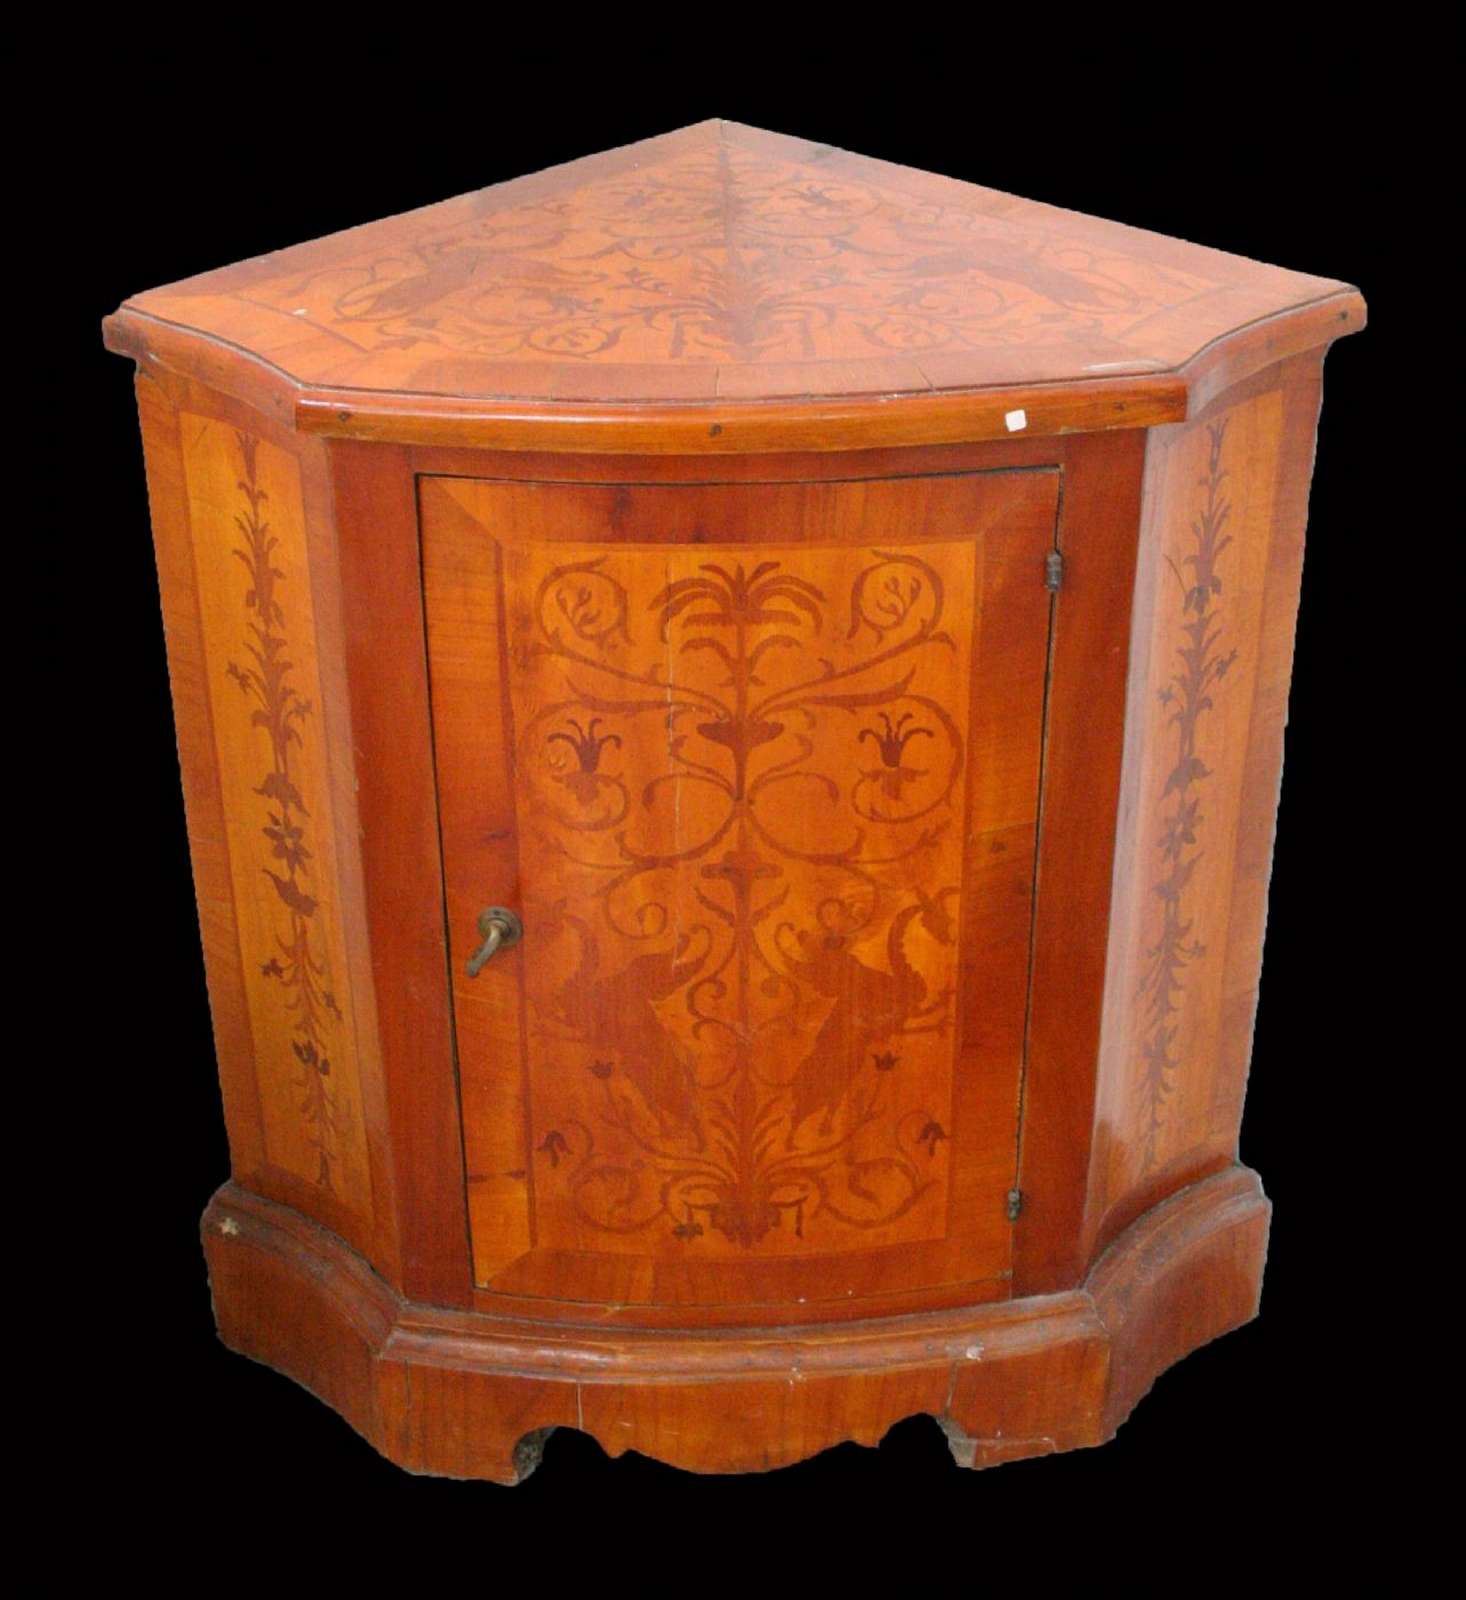 Angoliera intarsiata in legno. Epoca 1800. - Angoliere - Mobili antichi - Prodotti - Antichità Fiorillo